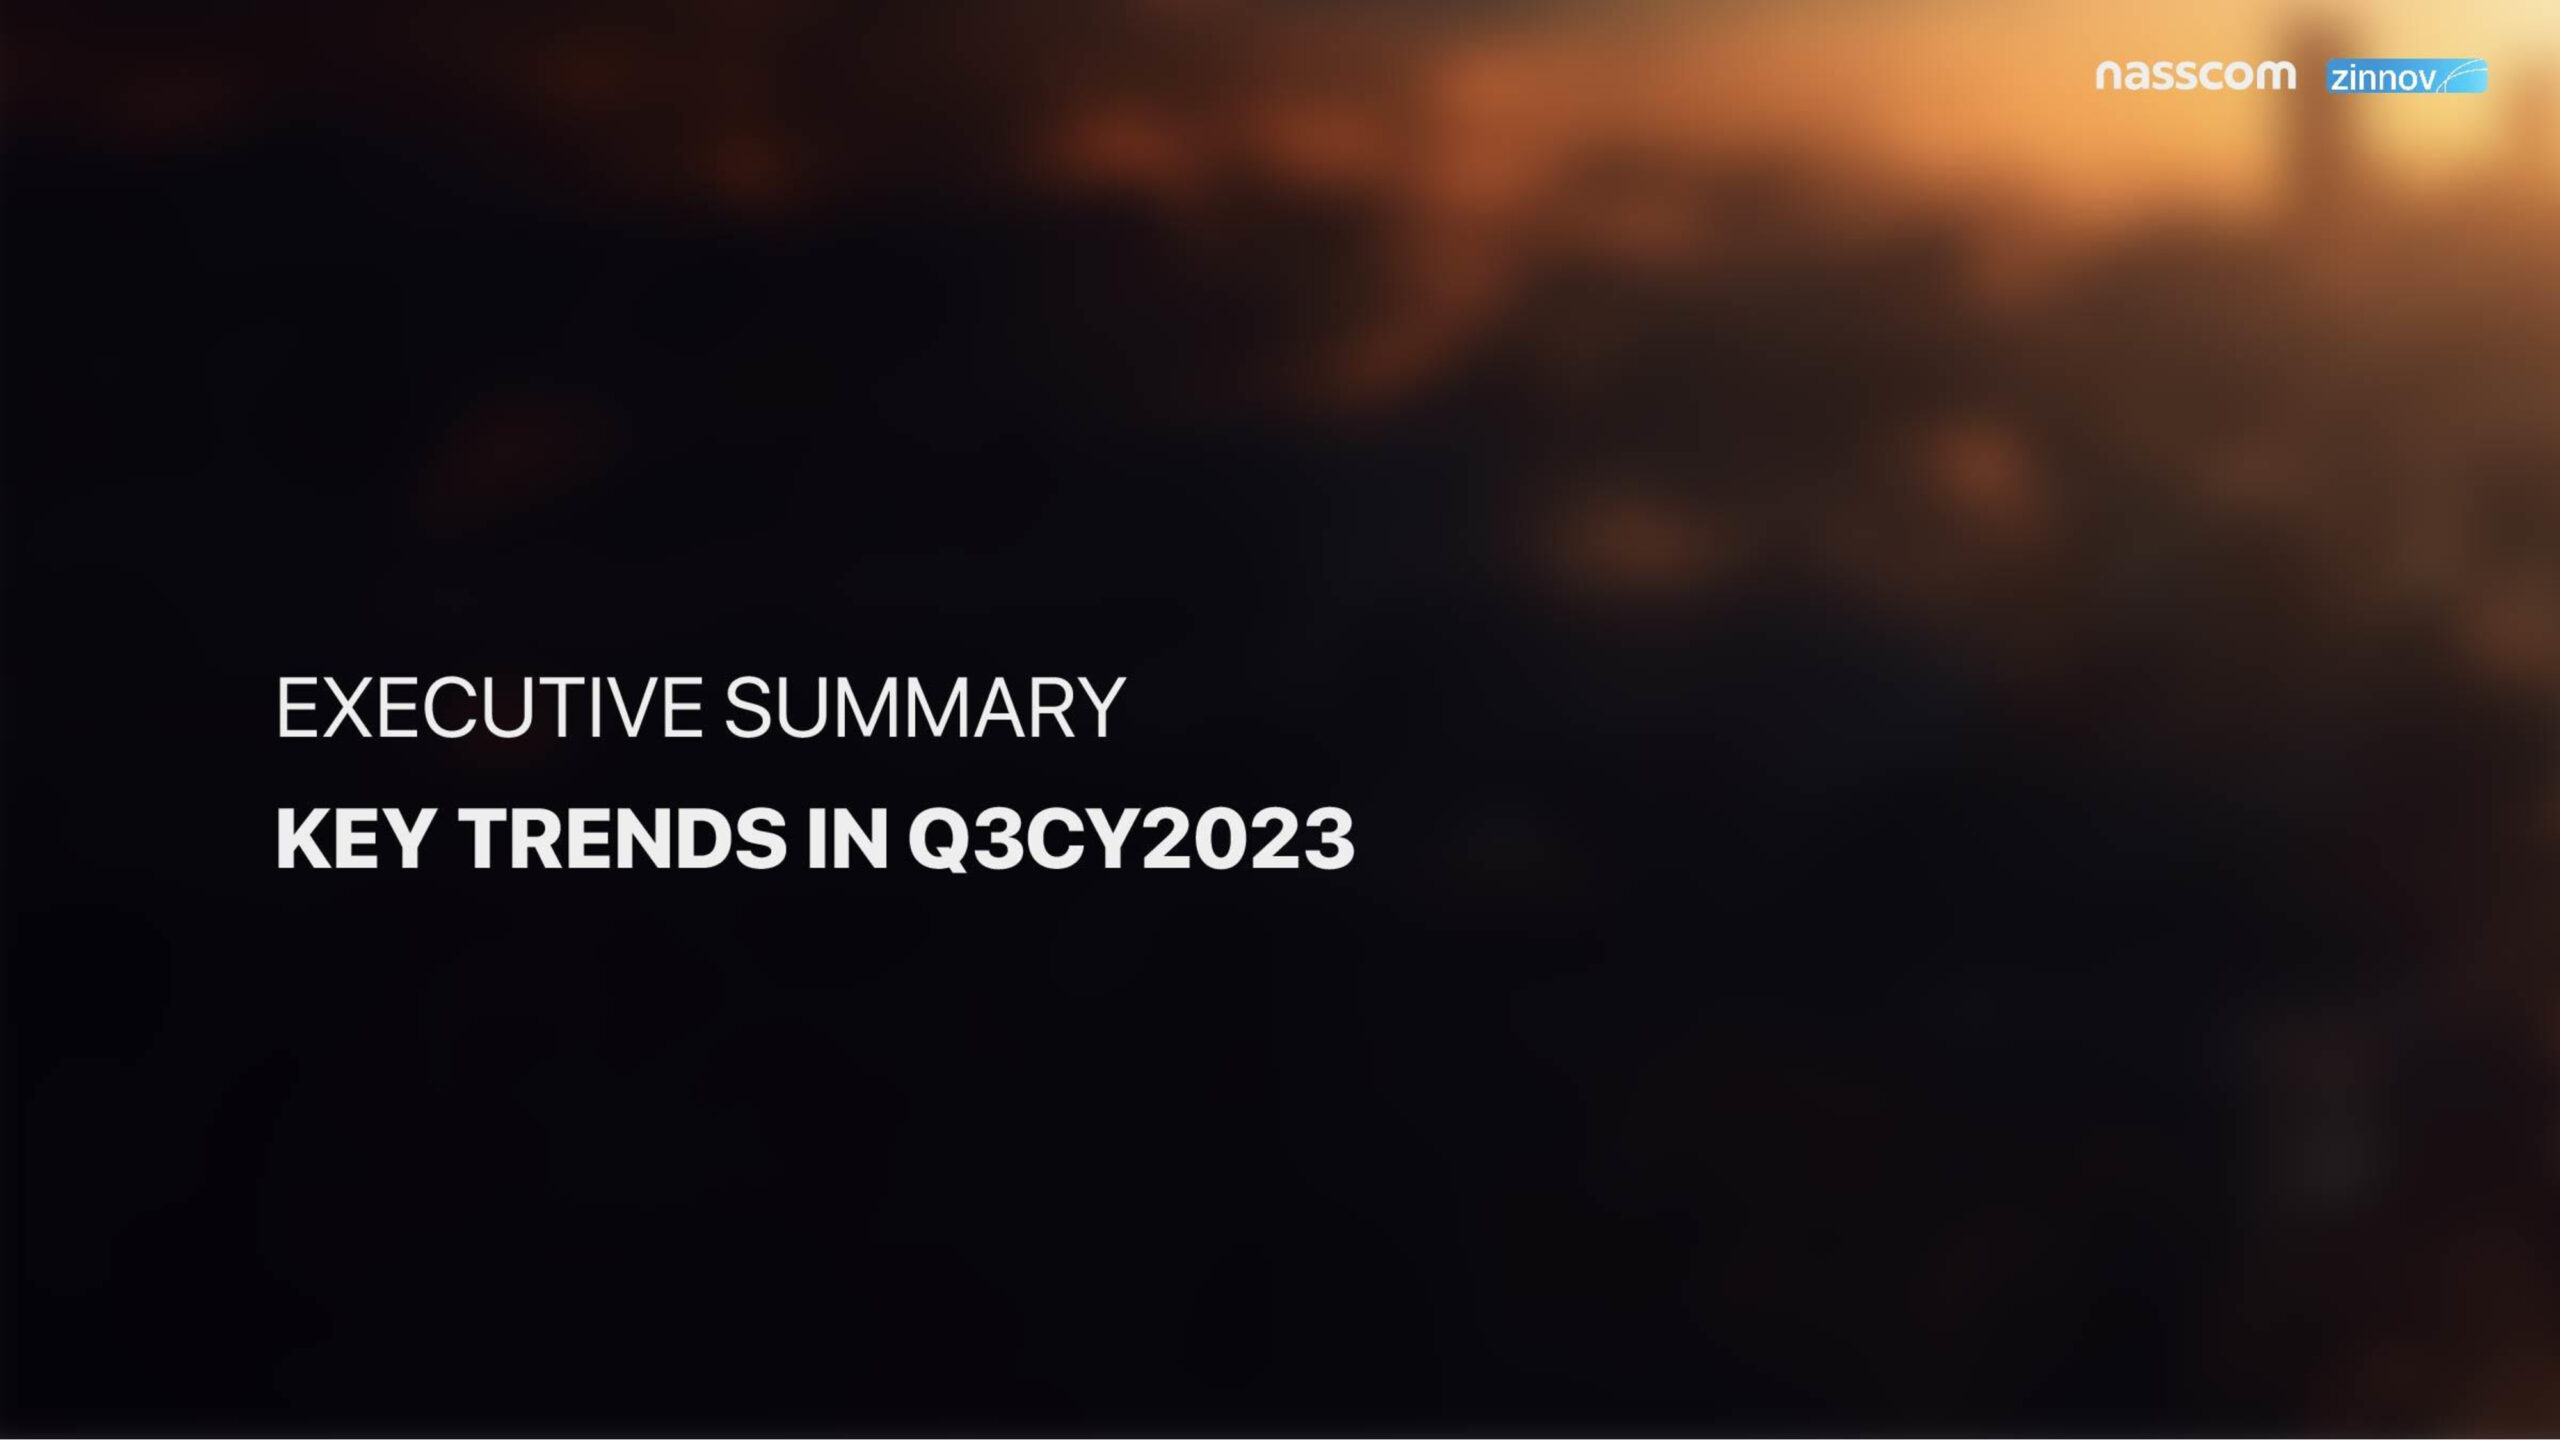 Zinnov Nasscom India Gcc Trends Report Q3 2023 Update4 Scaled